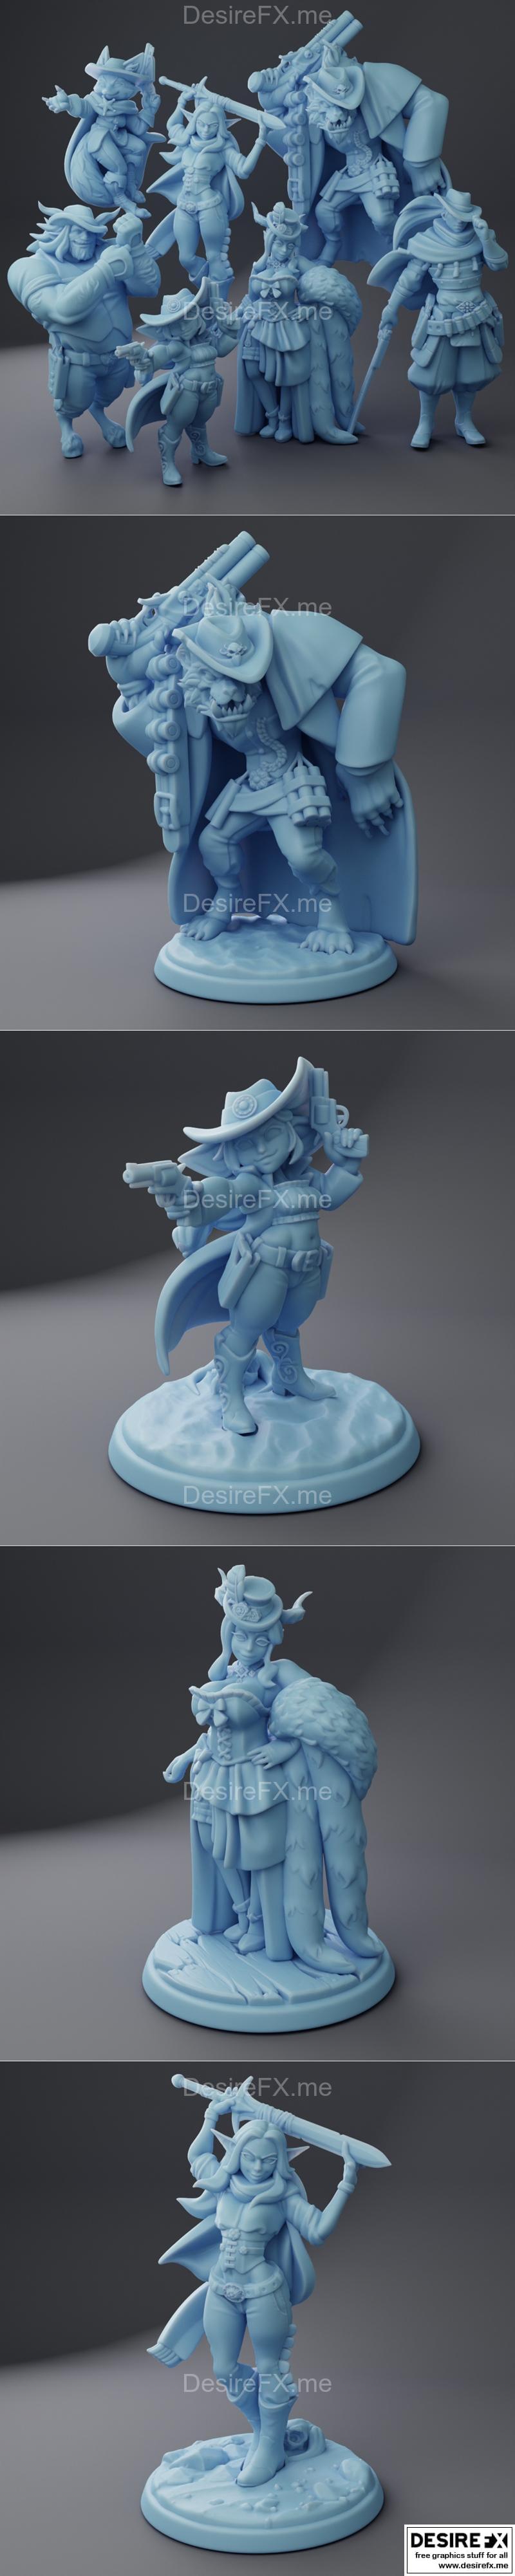 Desire FX 3d models | Twin Goddess Miniatures June 2023 – 3D Print ...